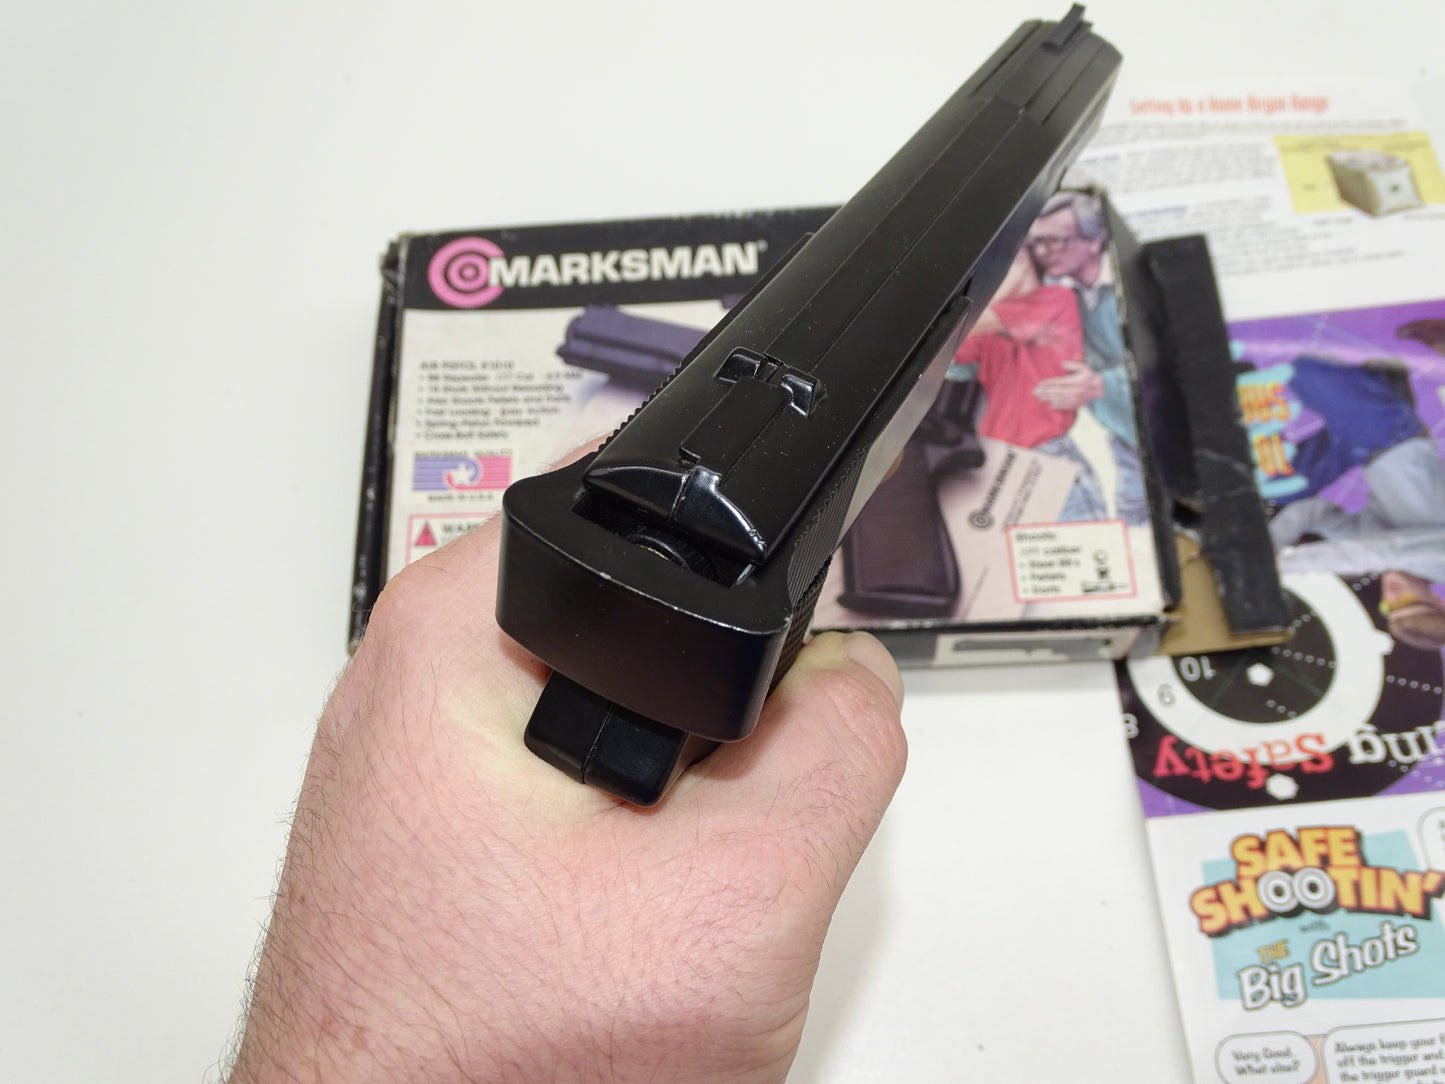 Speelgoedgeweer: Marksman, 1010 Air Pistol